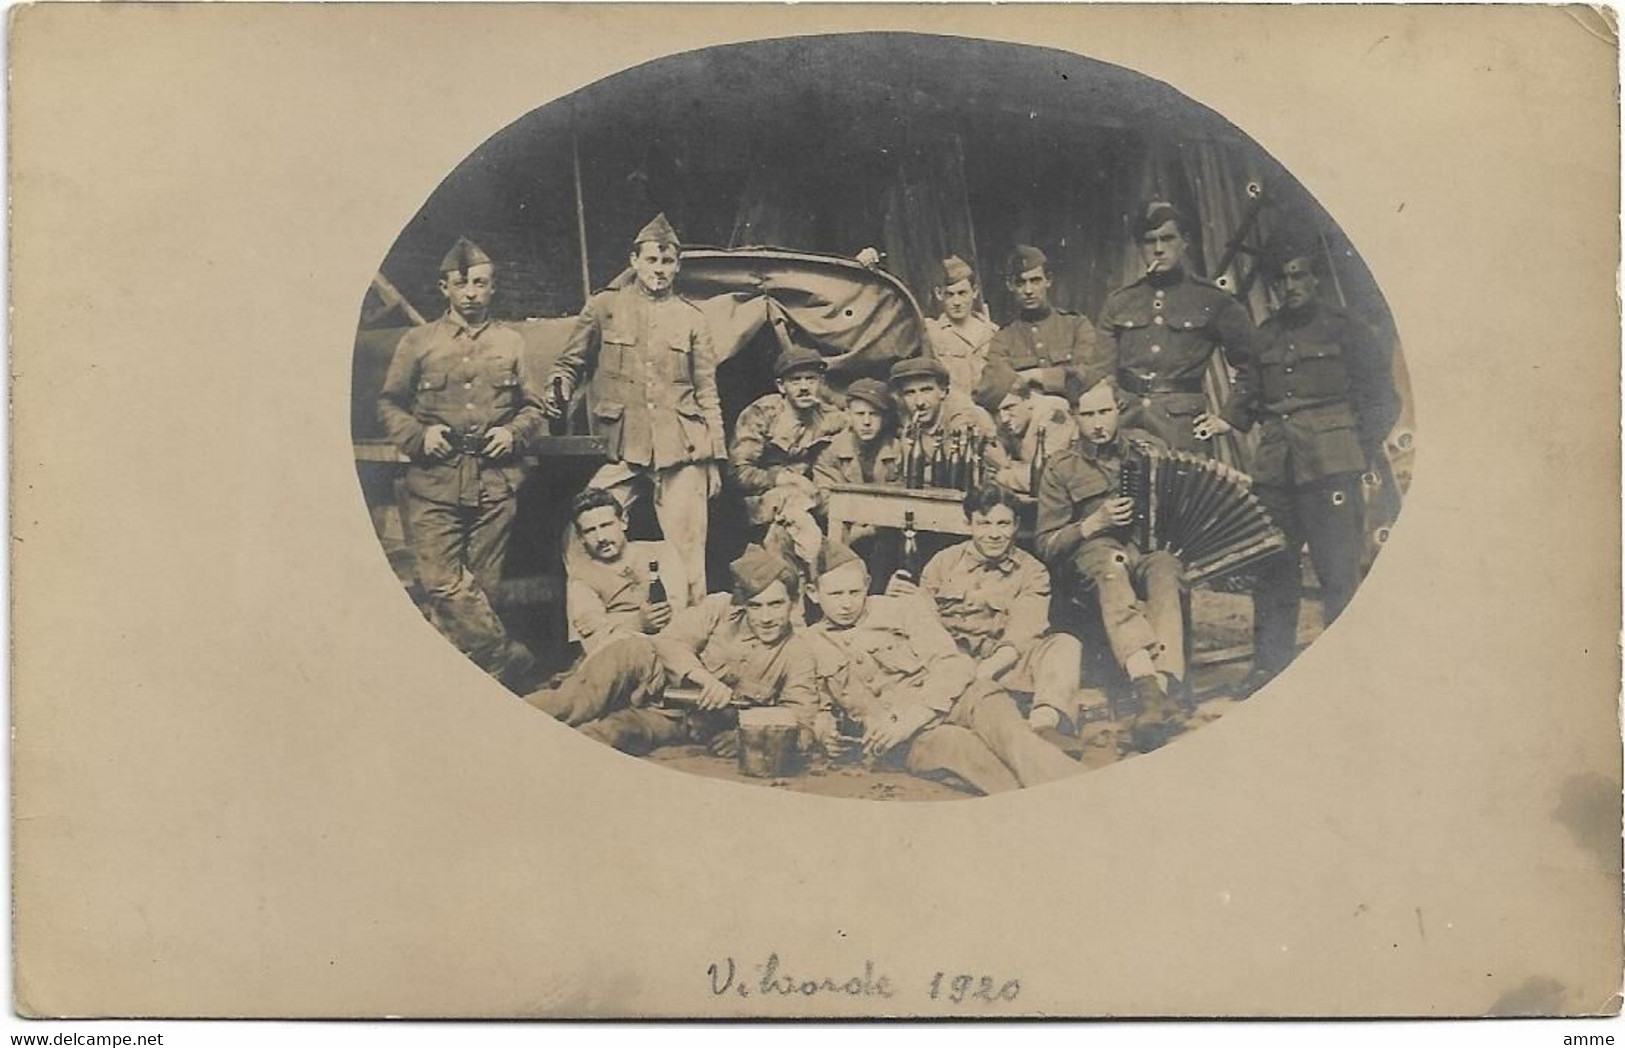 Vilvoorde - Vilvorde  *  Fotokaart 1920 (Armée - Leger - Militair - Accordeon - Bier) - Vilvoorde